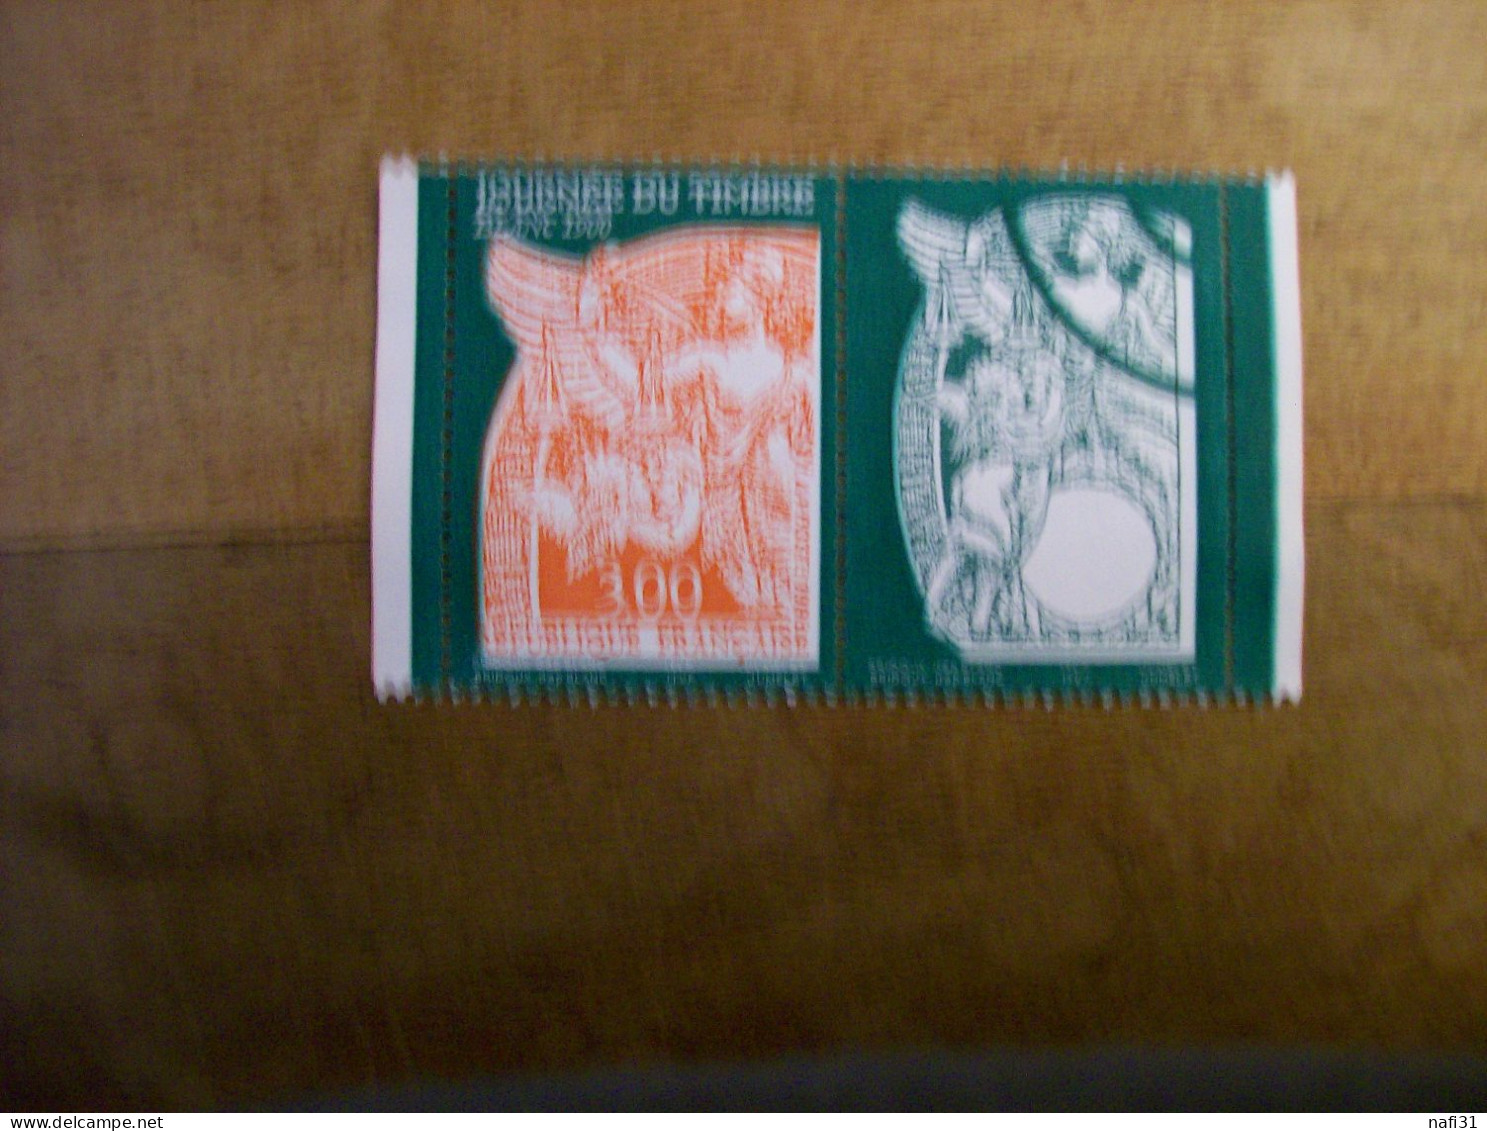 FRANCE Carnet Journnee Du Timbre Annee1998 N 3136 A Ob Cote 3,OO - Tag Der Briefmarke